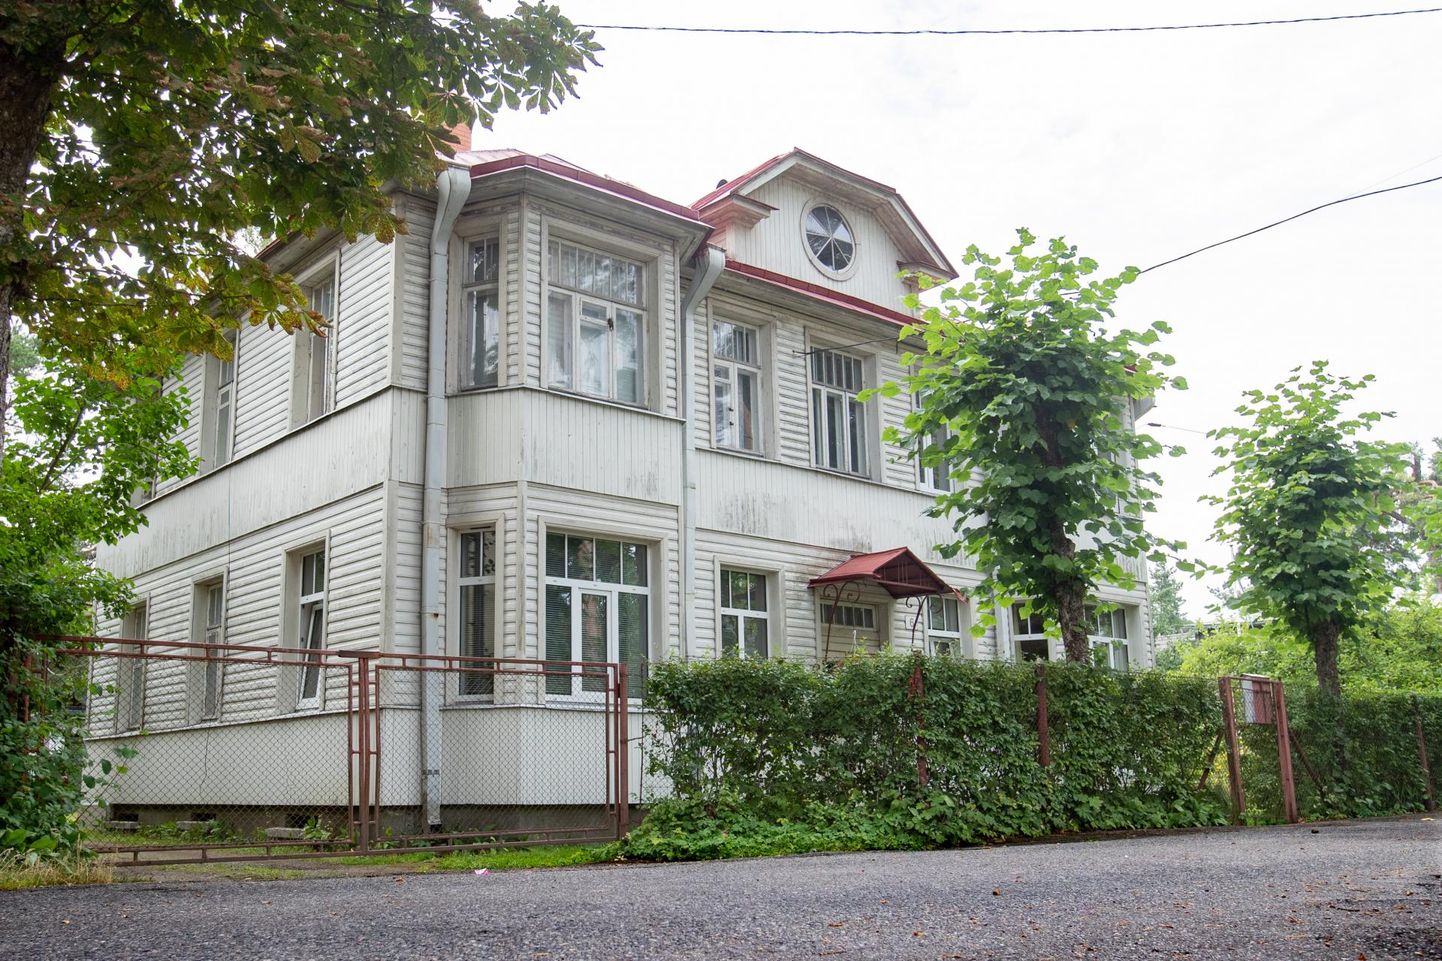 17.08.2022, Otto Tiefi valitsus astus ametisse Nõmmel aadressil Silla 6 asuvas majas.